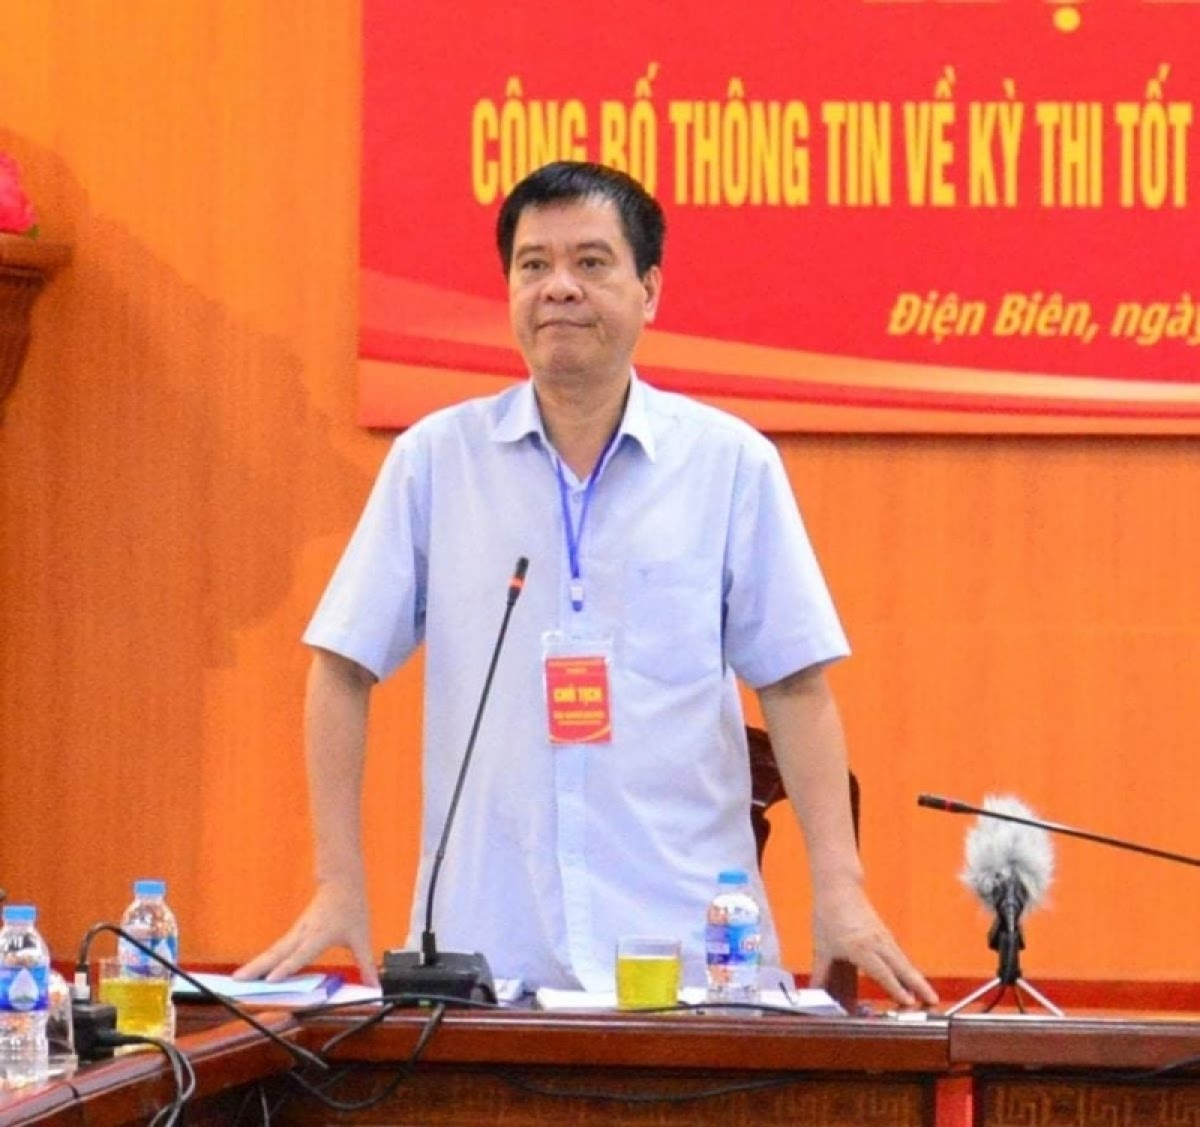 Cựu Giám đốc Sở Giáo dục và Đào tạo Điện Biên Nguyễn Văn Kiên chuẩn bị hầu tòa